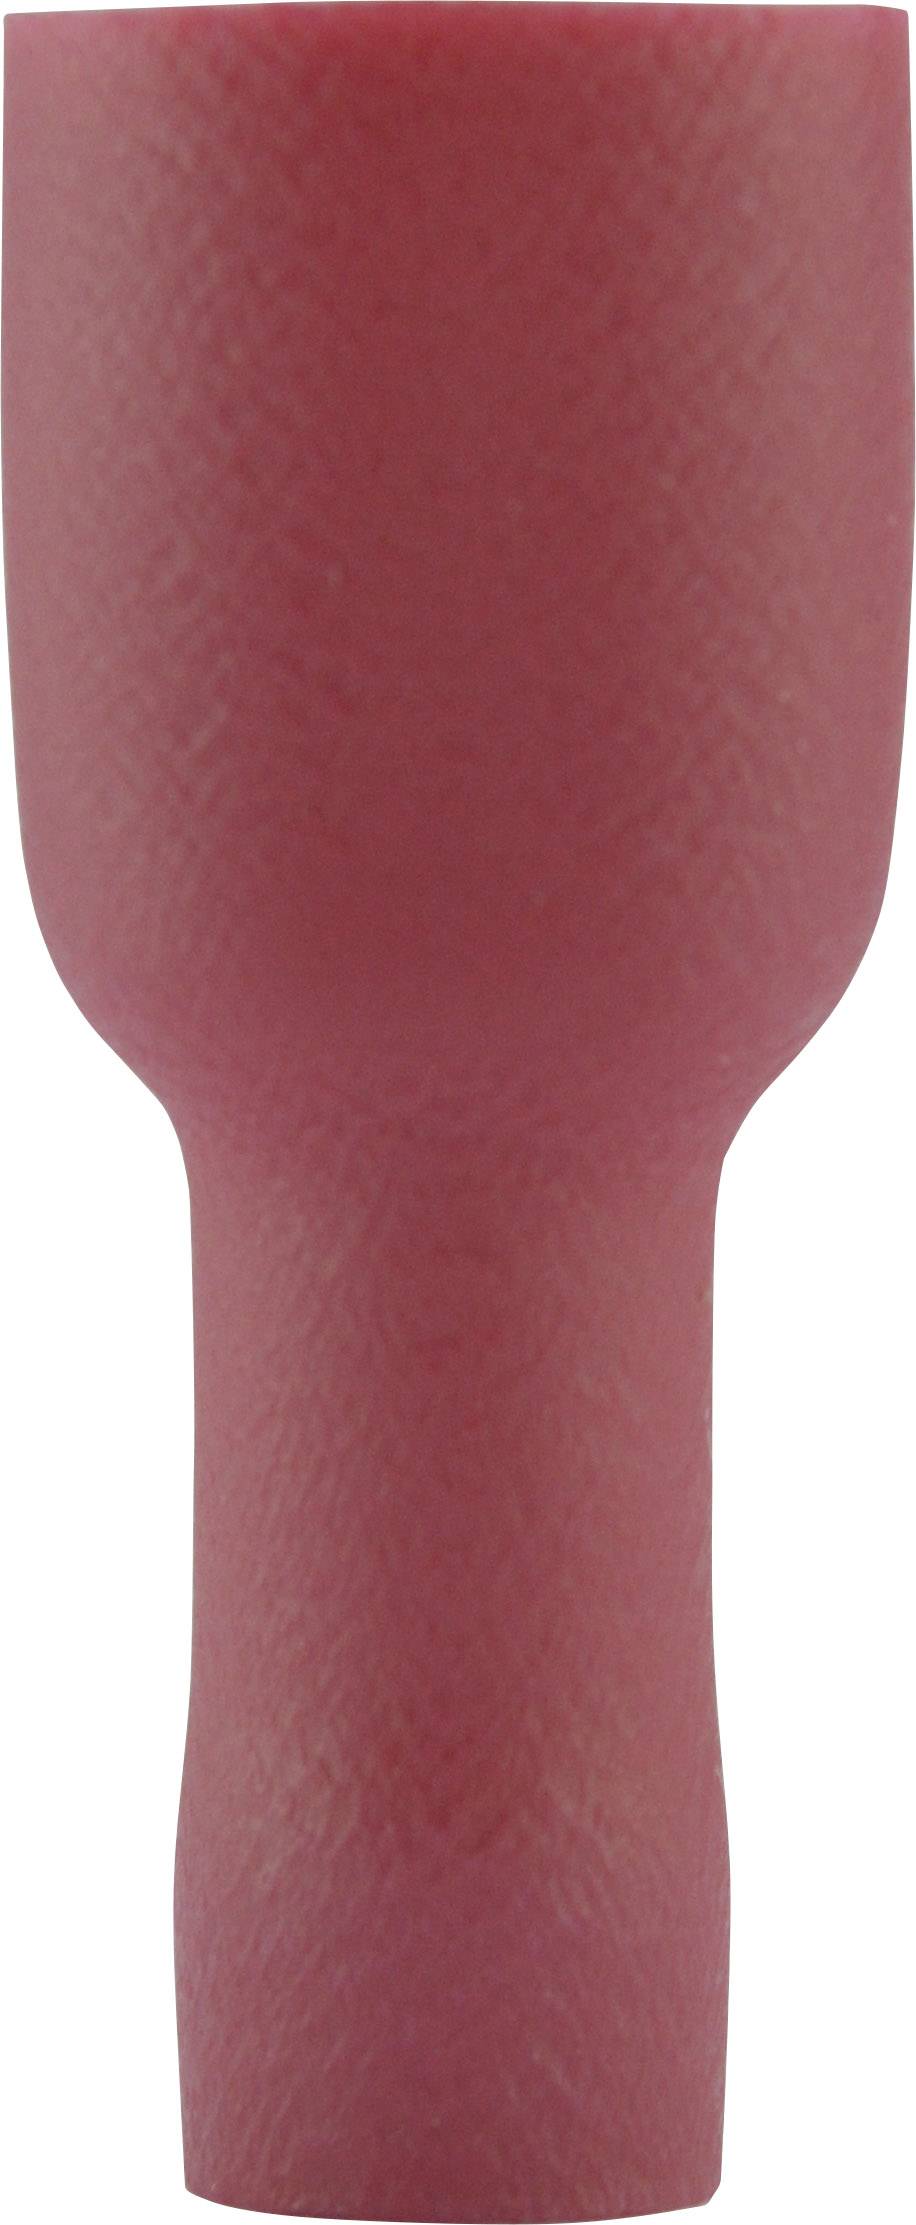 VOGT Flachsteckhülse Steckbreite: 4.8 mm Steckdicke: 0.8 mm 180 ° Vollisoliert Rot Vogt Verbindungst